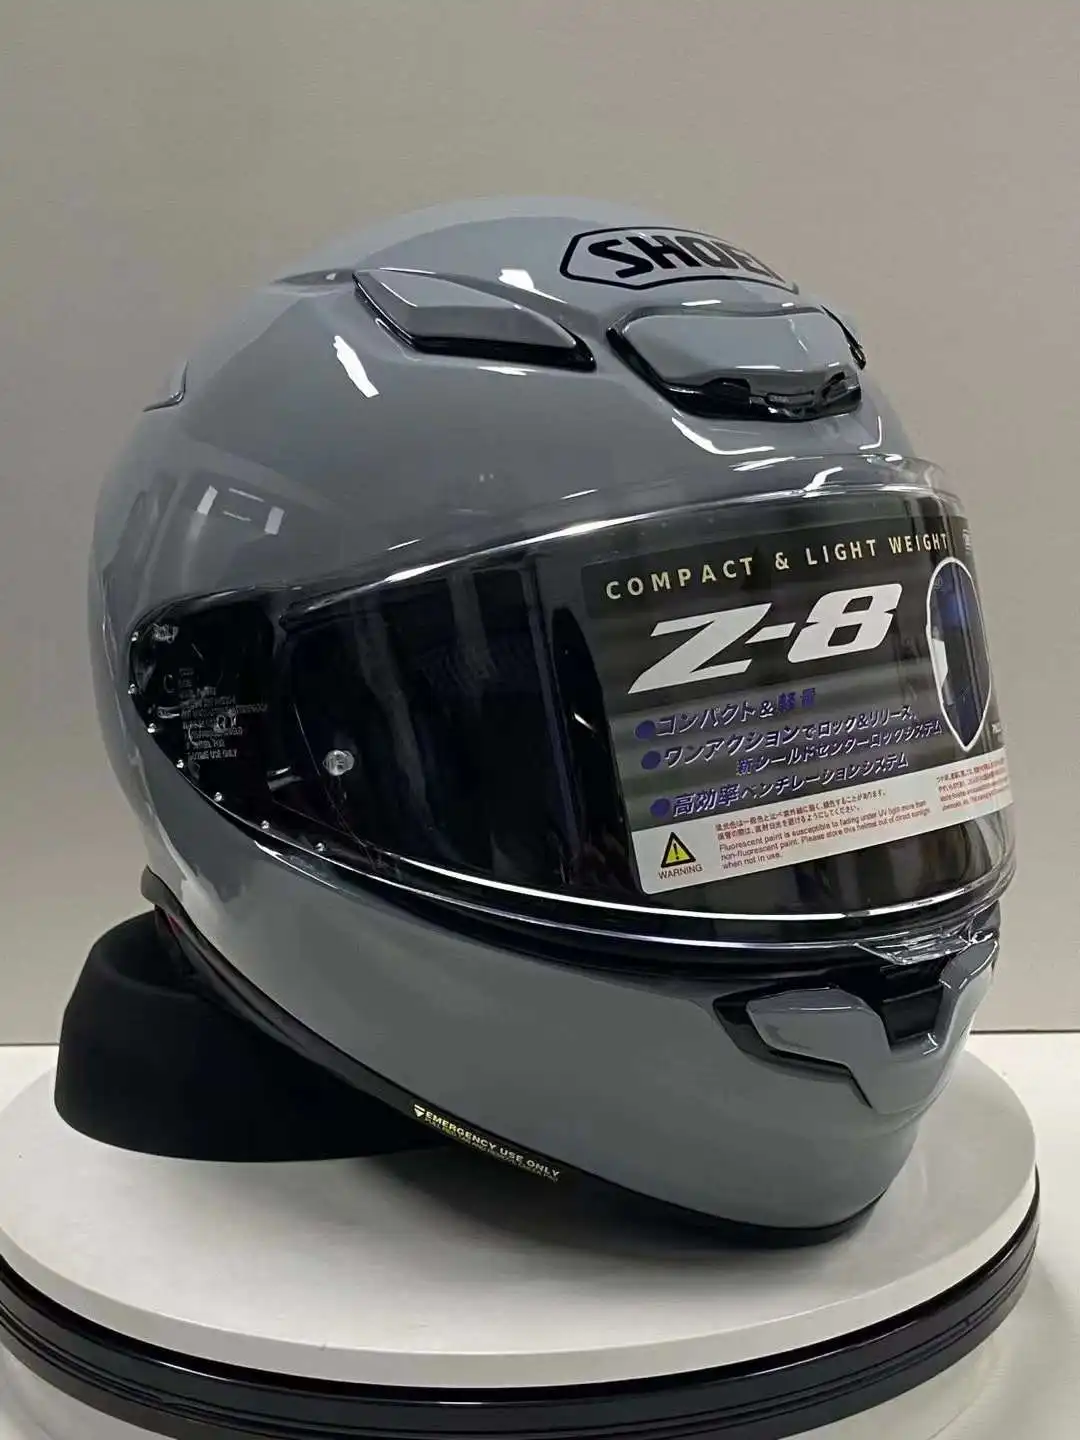 Full Face Motorcycle Helmet SHOEI Z8 RF-1400 Helmet Riding Motocross Racing  Motobike Helmet-Cement gray